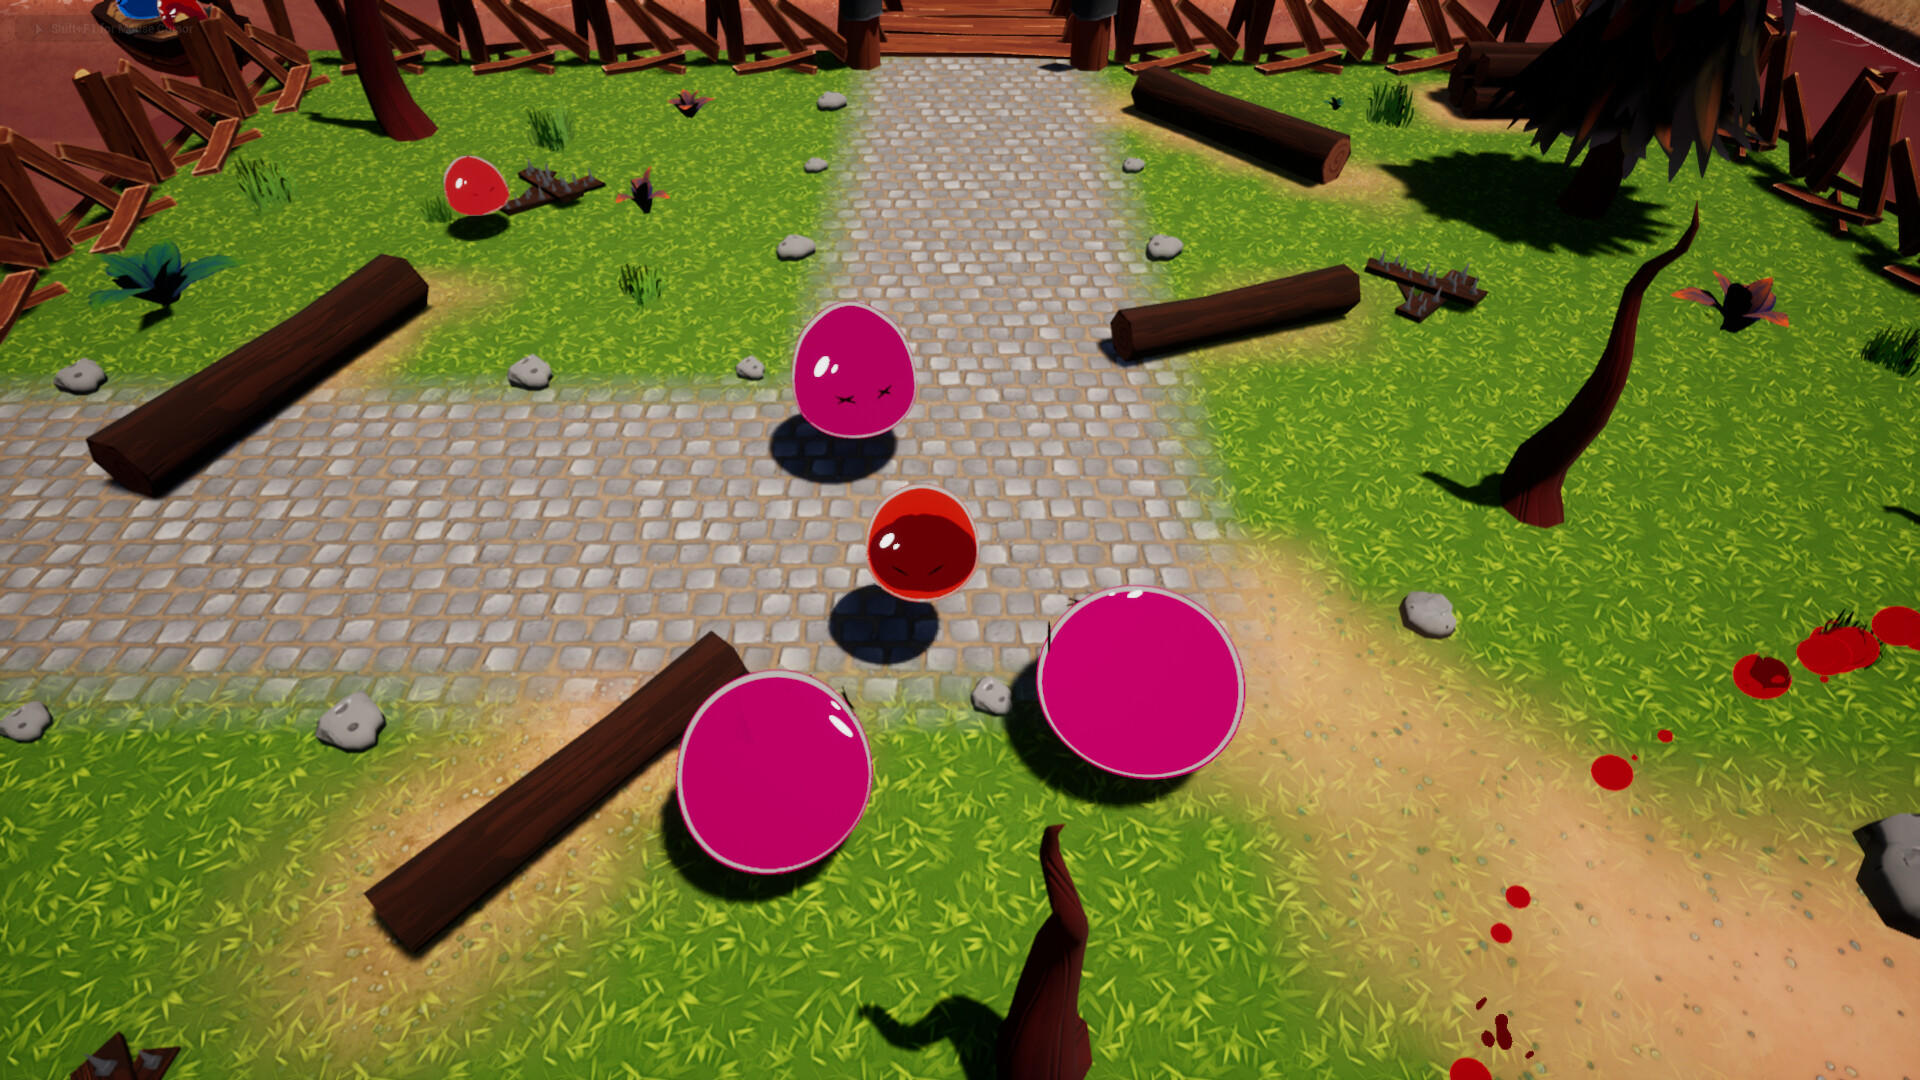 Slime Wars screenshot game